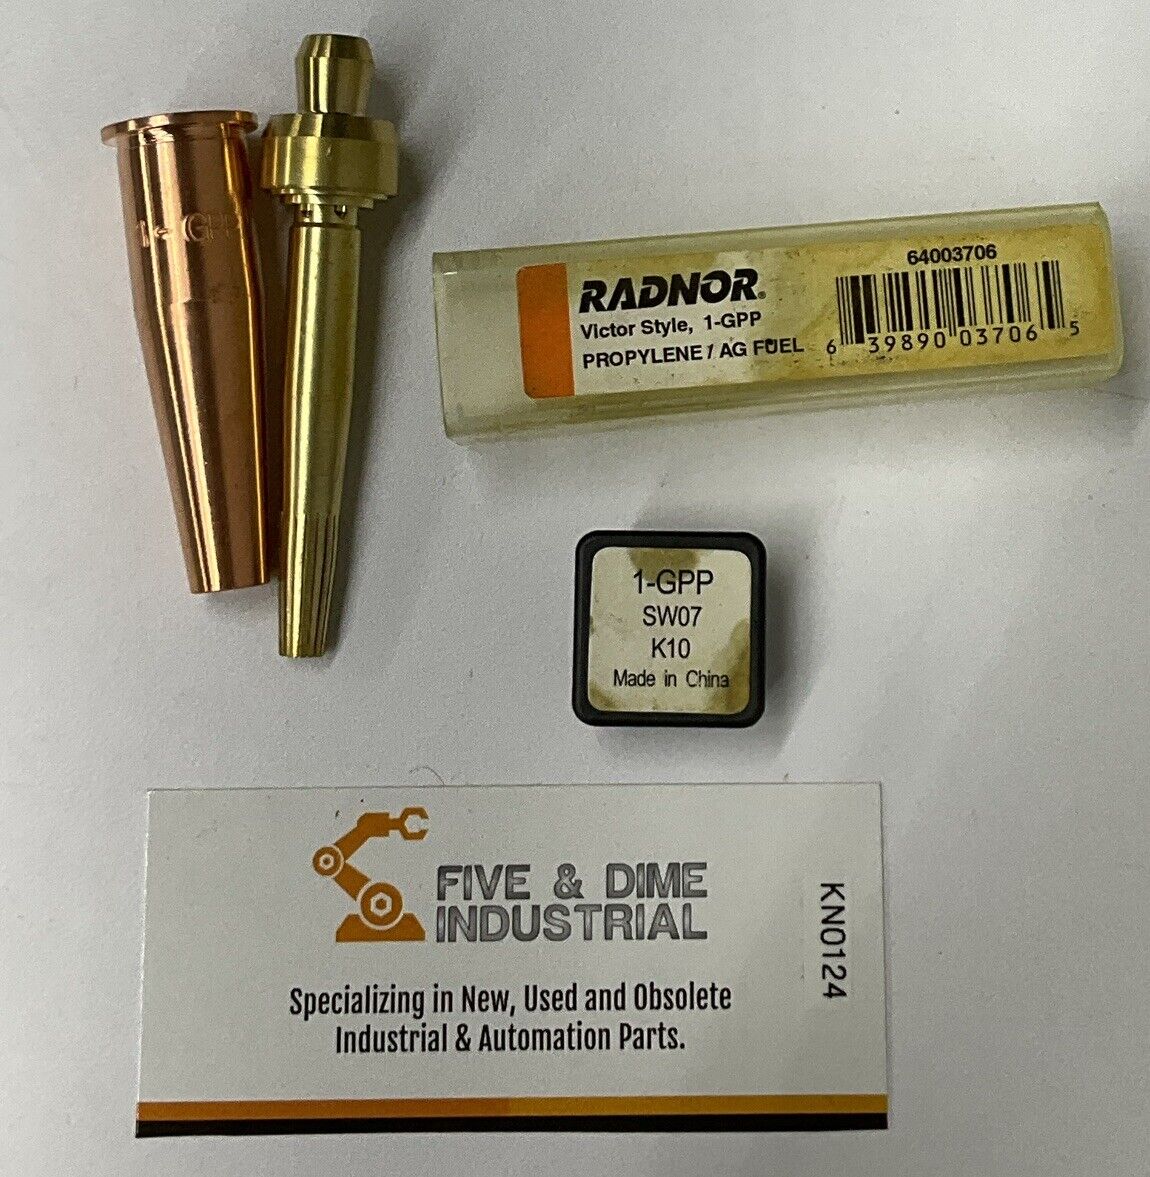 Radnor 64003706 1-gpp Size 1  2 Piece Propylene Cutting Torch Tip  (CL198)